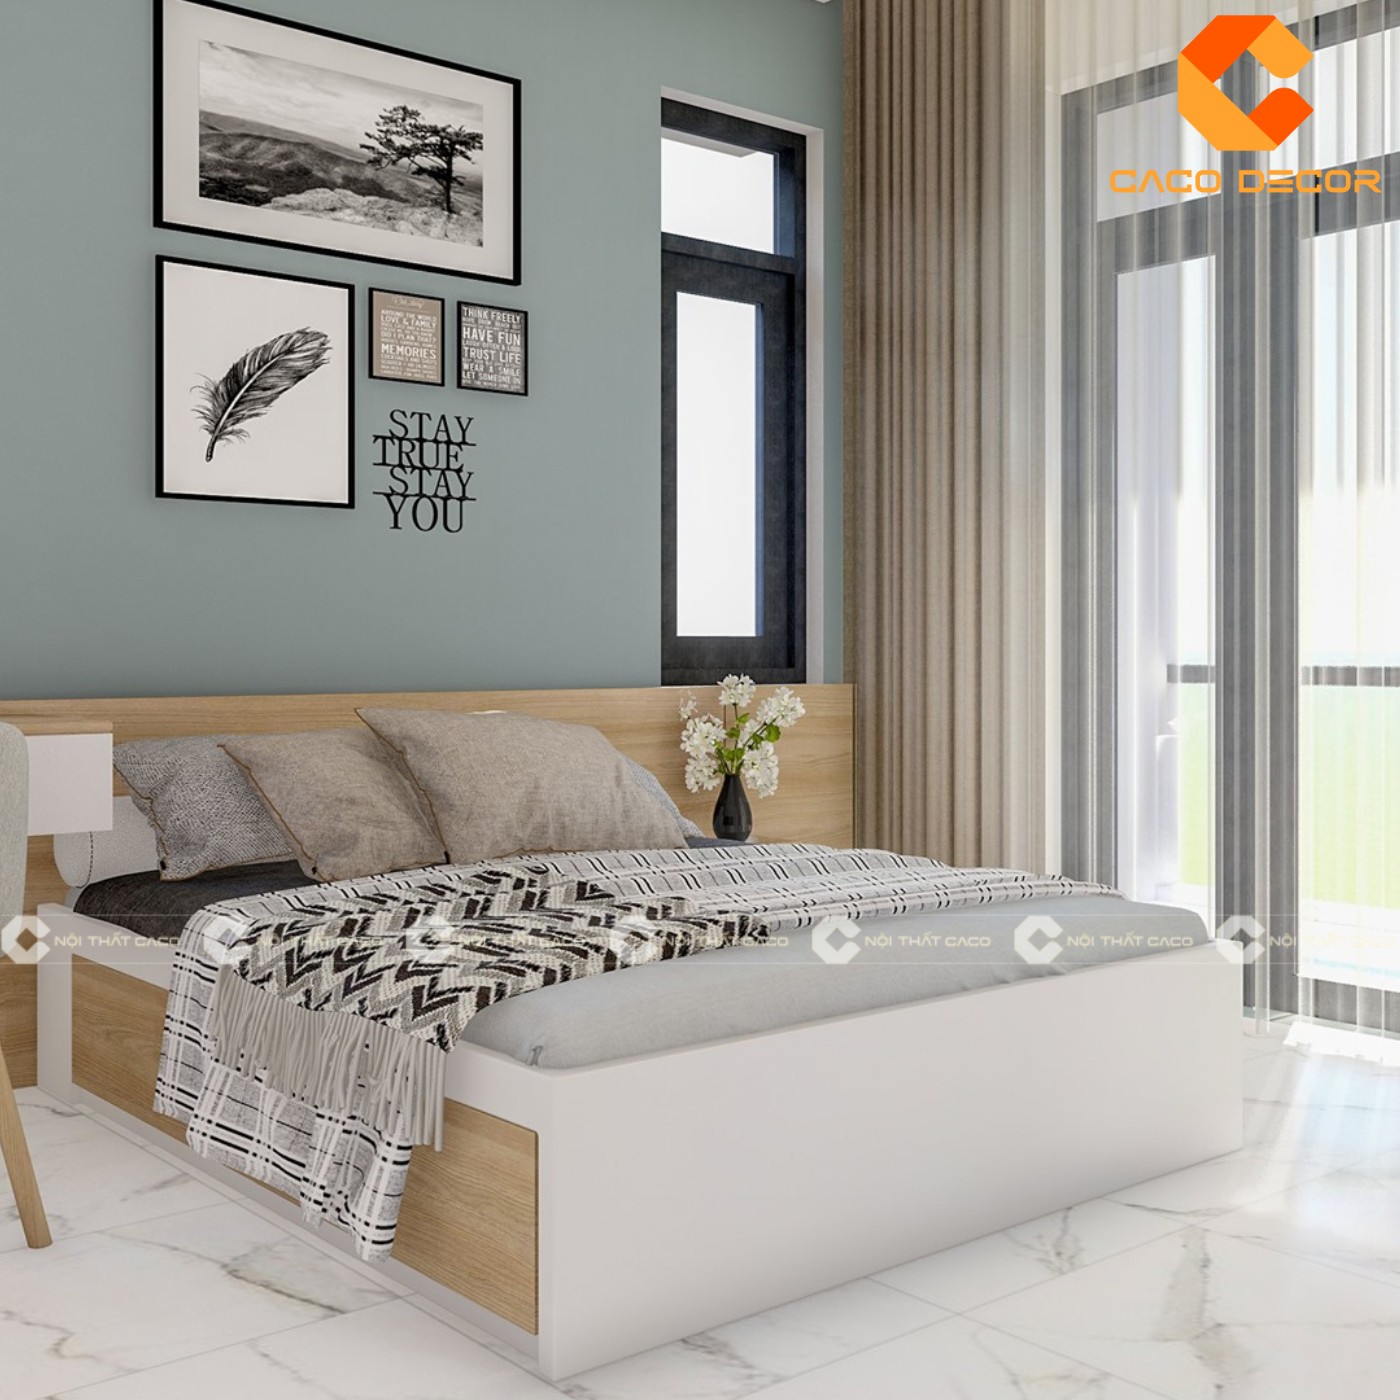 Giường ngủ gỗ công nghiệp đẹp, chất lượng với giá tốt nhất thị trường 17